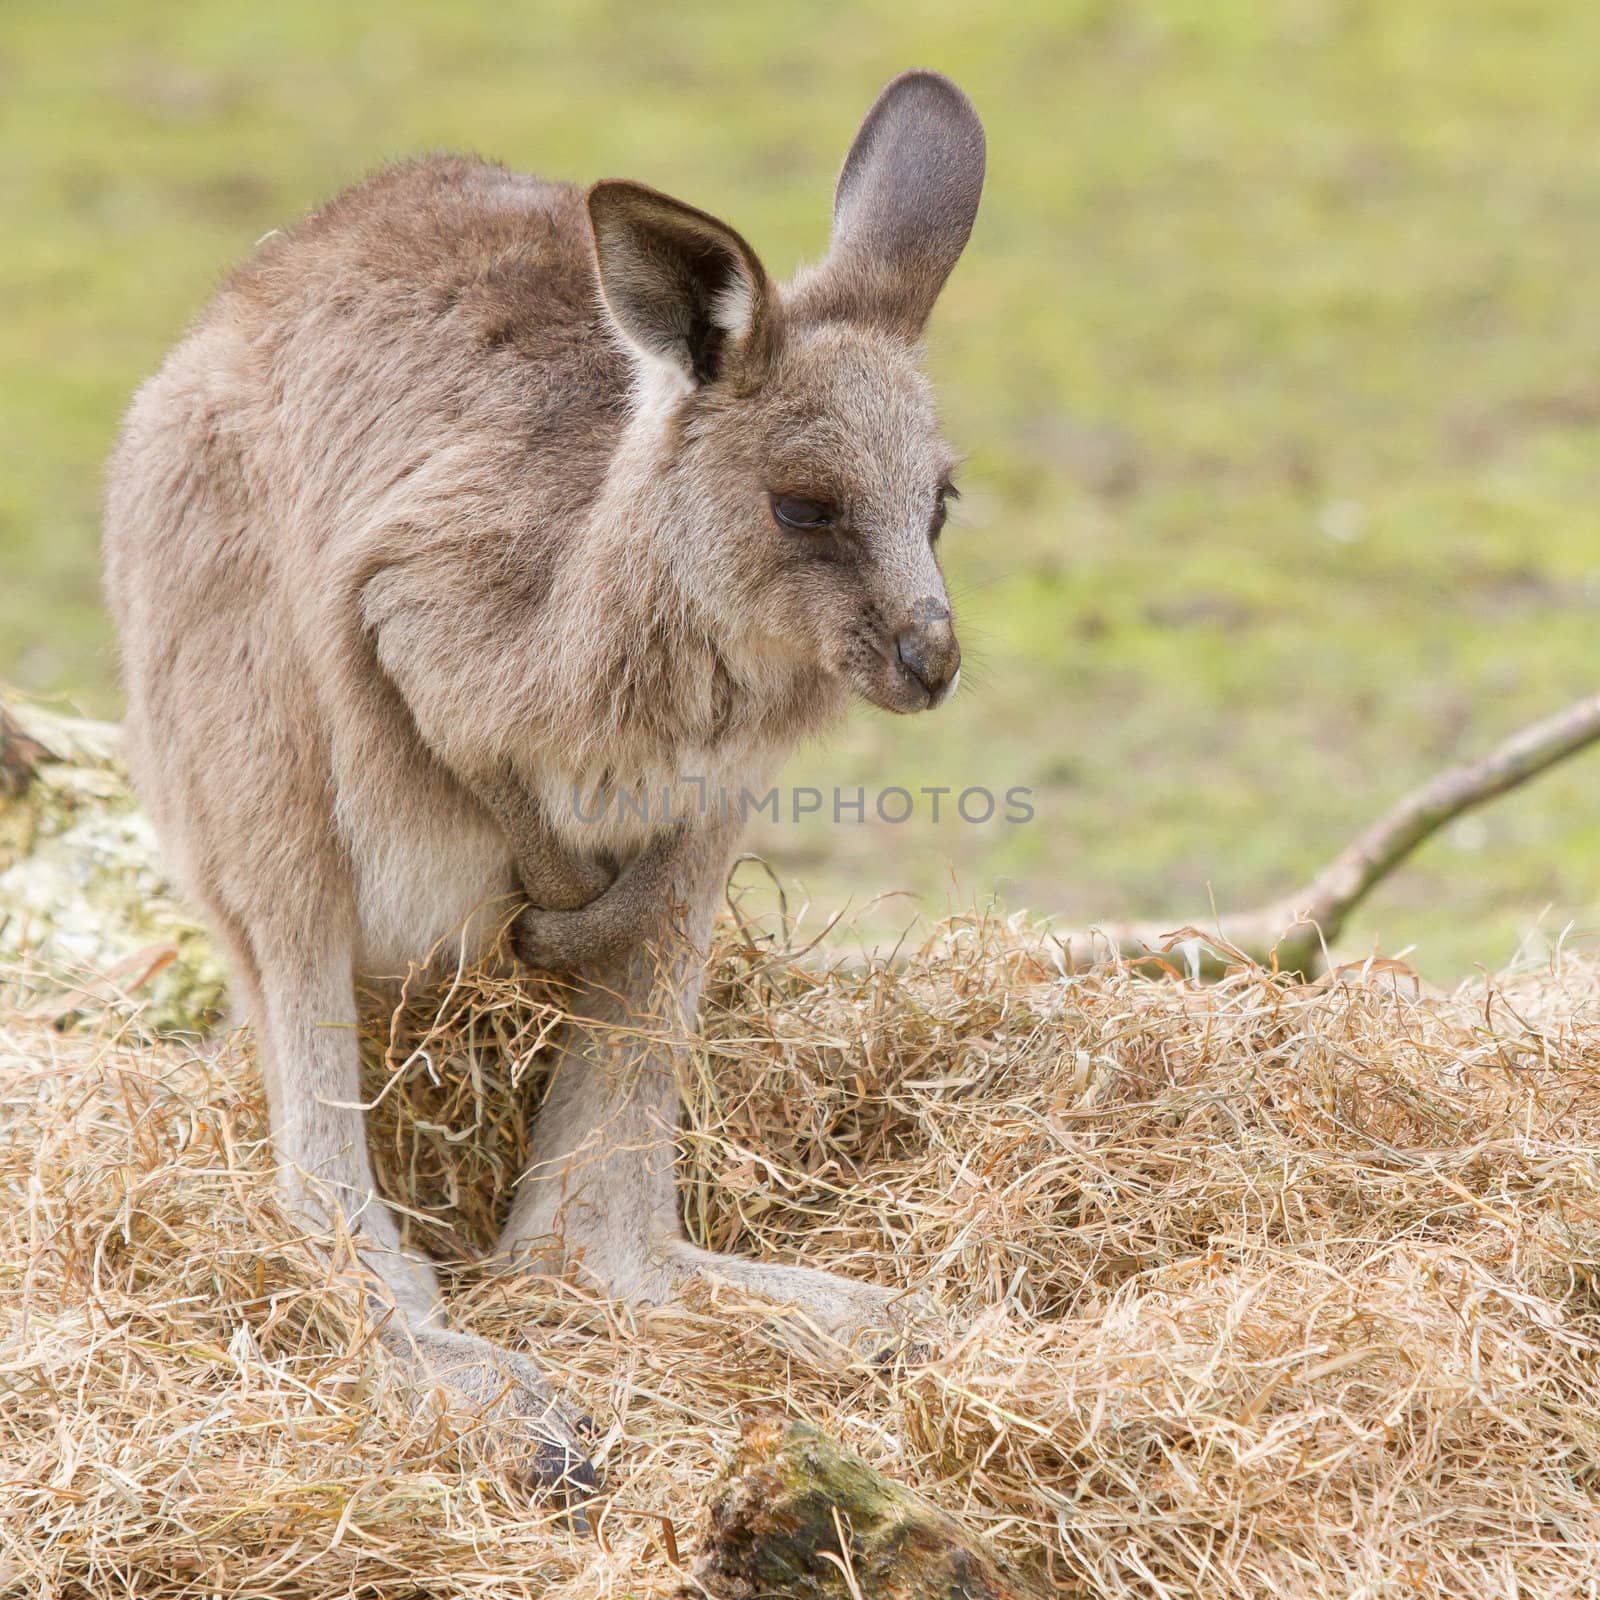 A young kangaroo  in a dutch zoo